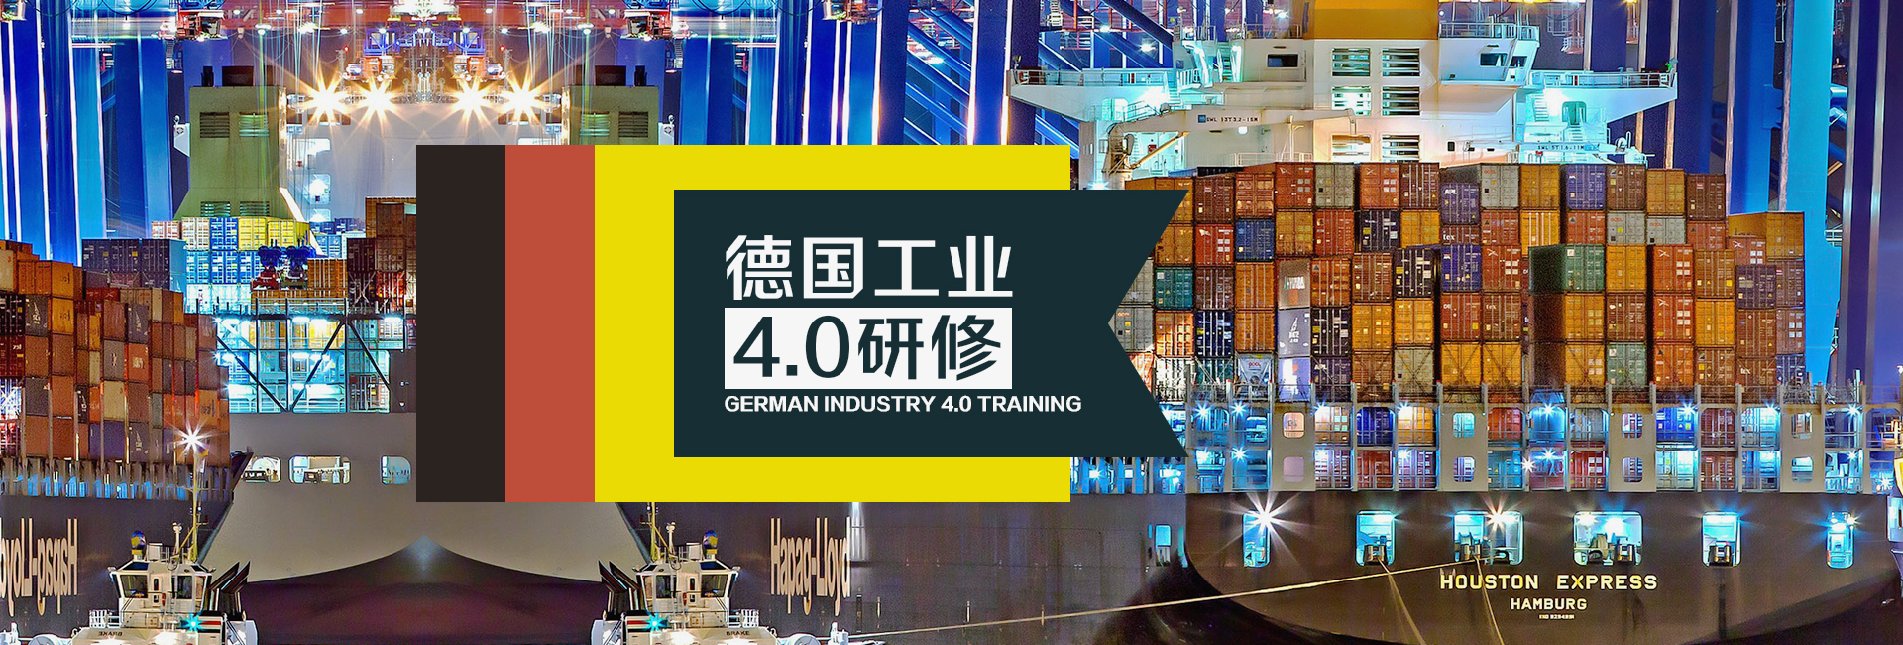 德国工业4.0研修